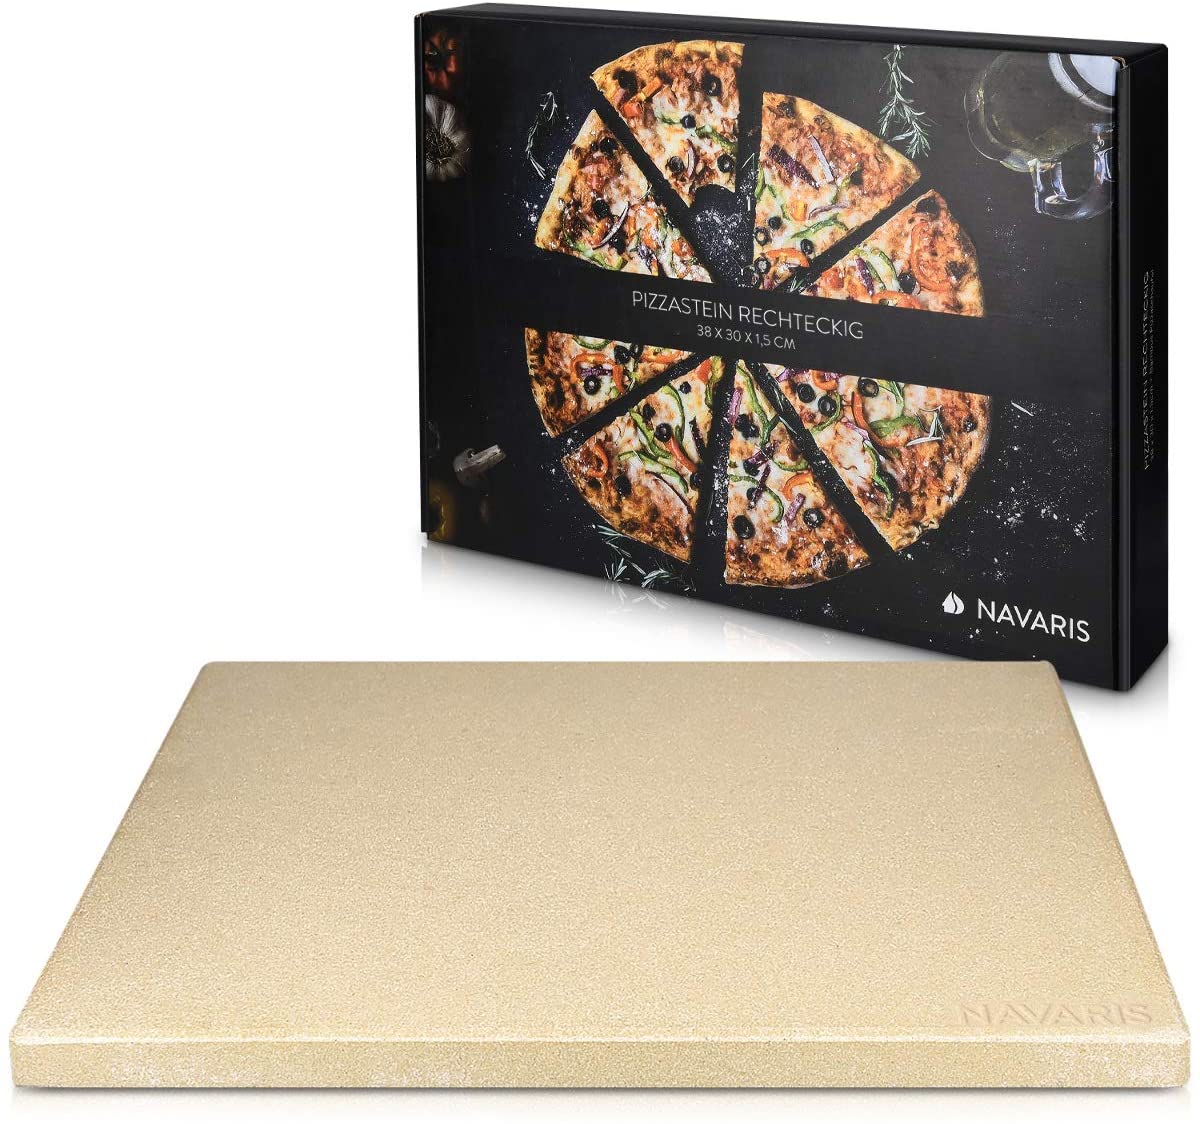 Navaris Pietra refrattaria per cottura della pizza XL, per cuocere nel forno di casa pane, pizza, focacce teglia rettangolare 38x30cm